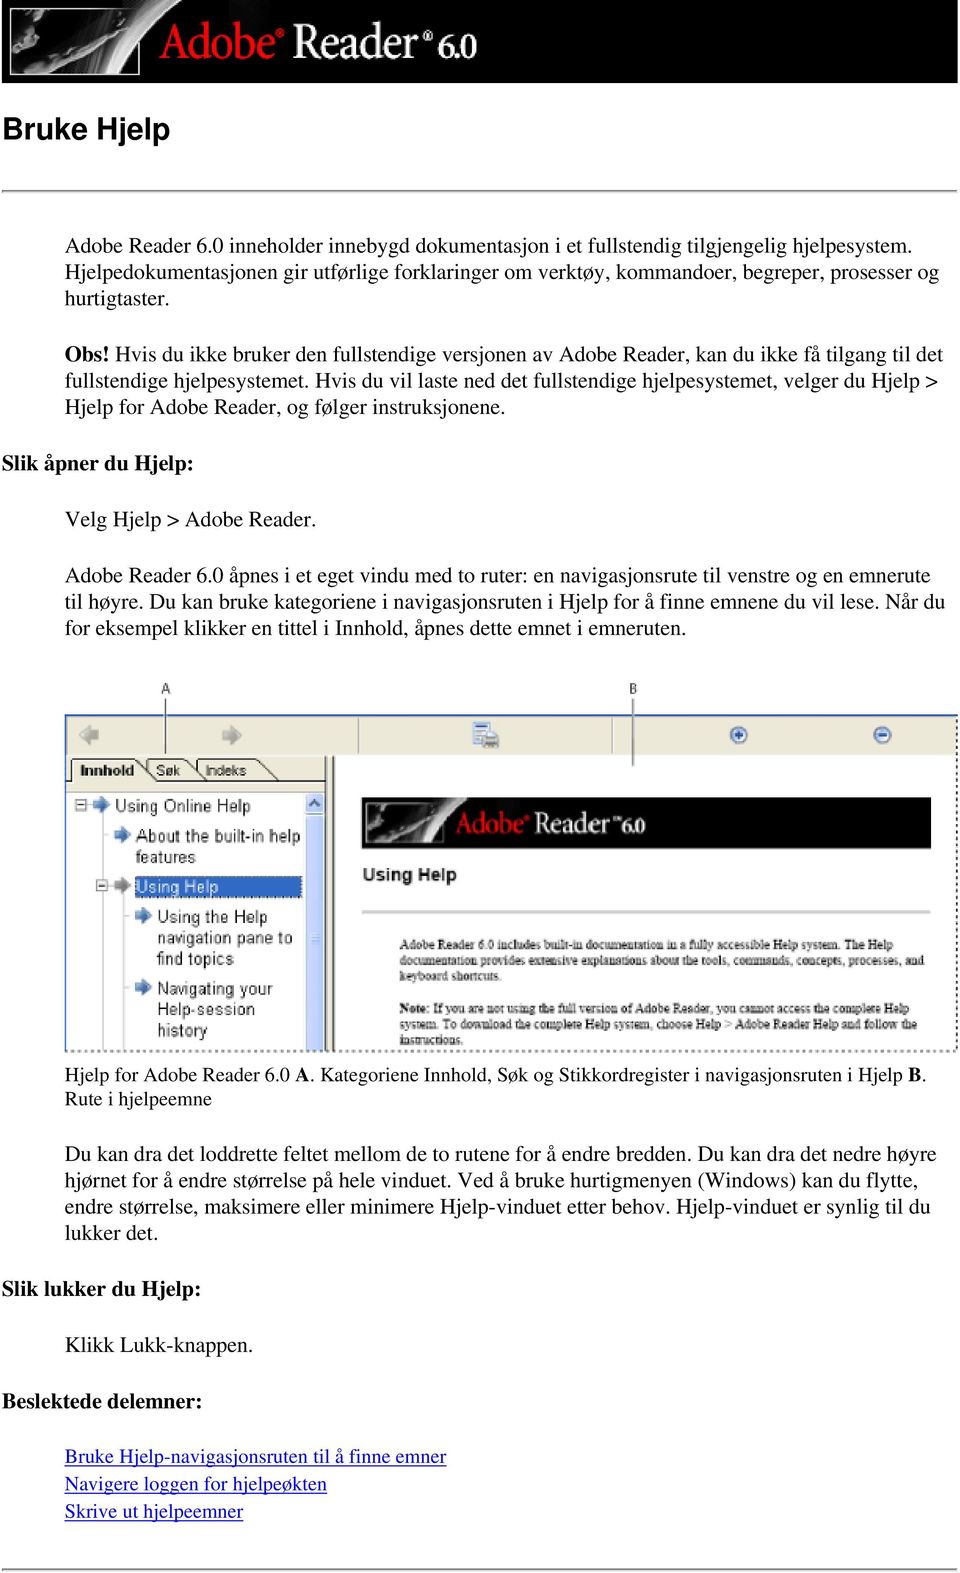 Hvis du ikke bruker den fullstendige versjonen av Adobe Reader, kan du ikke få tilgang til det fullstendige hjelpesystemet.